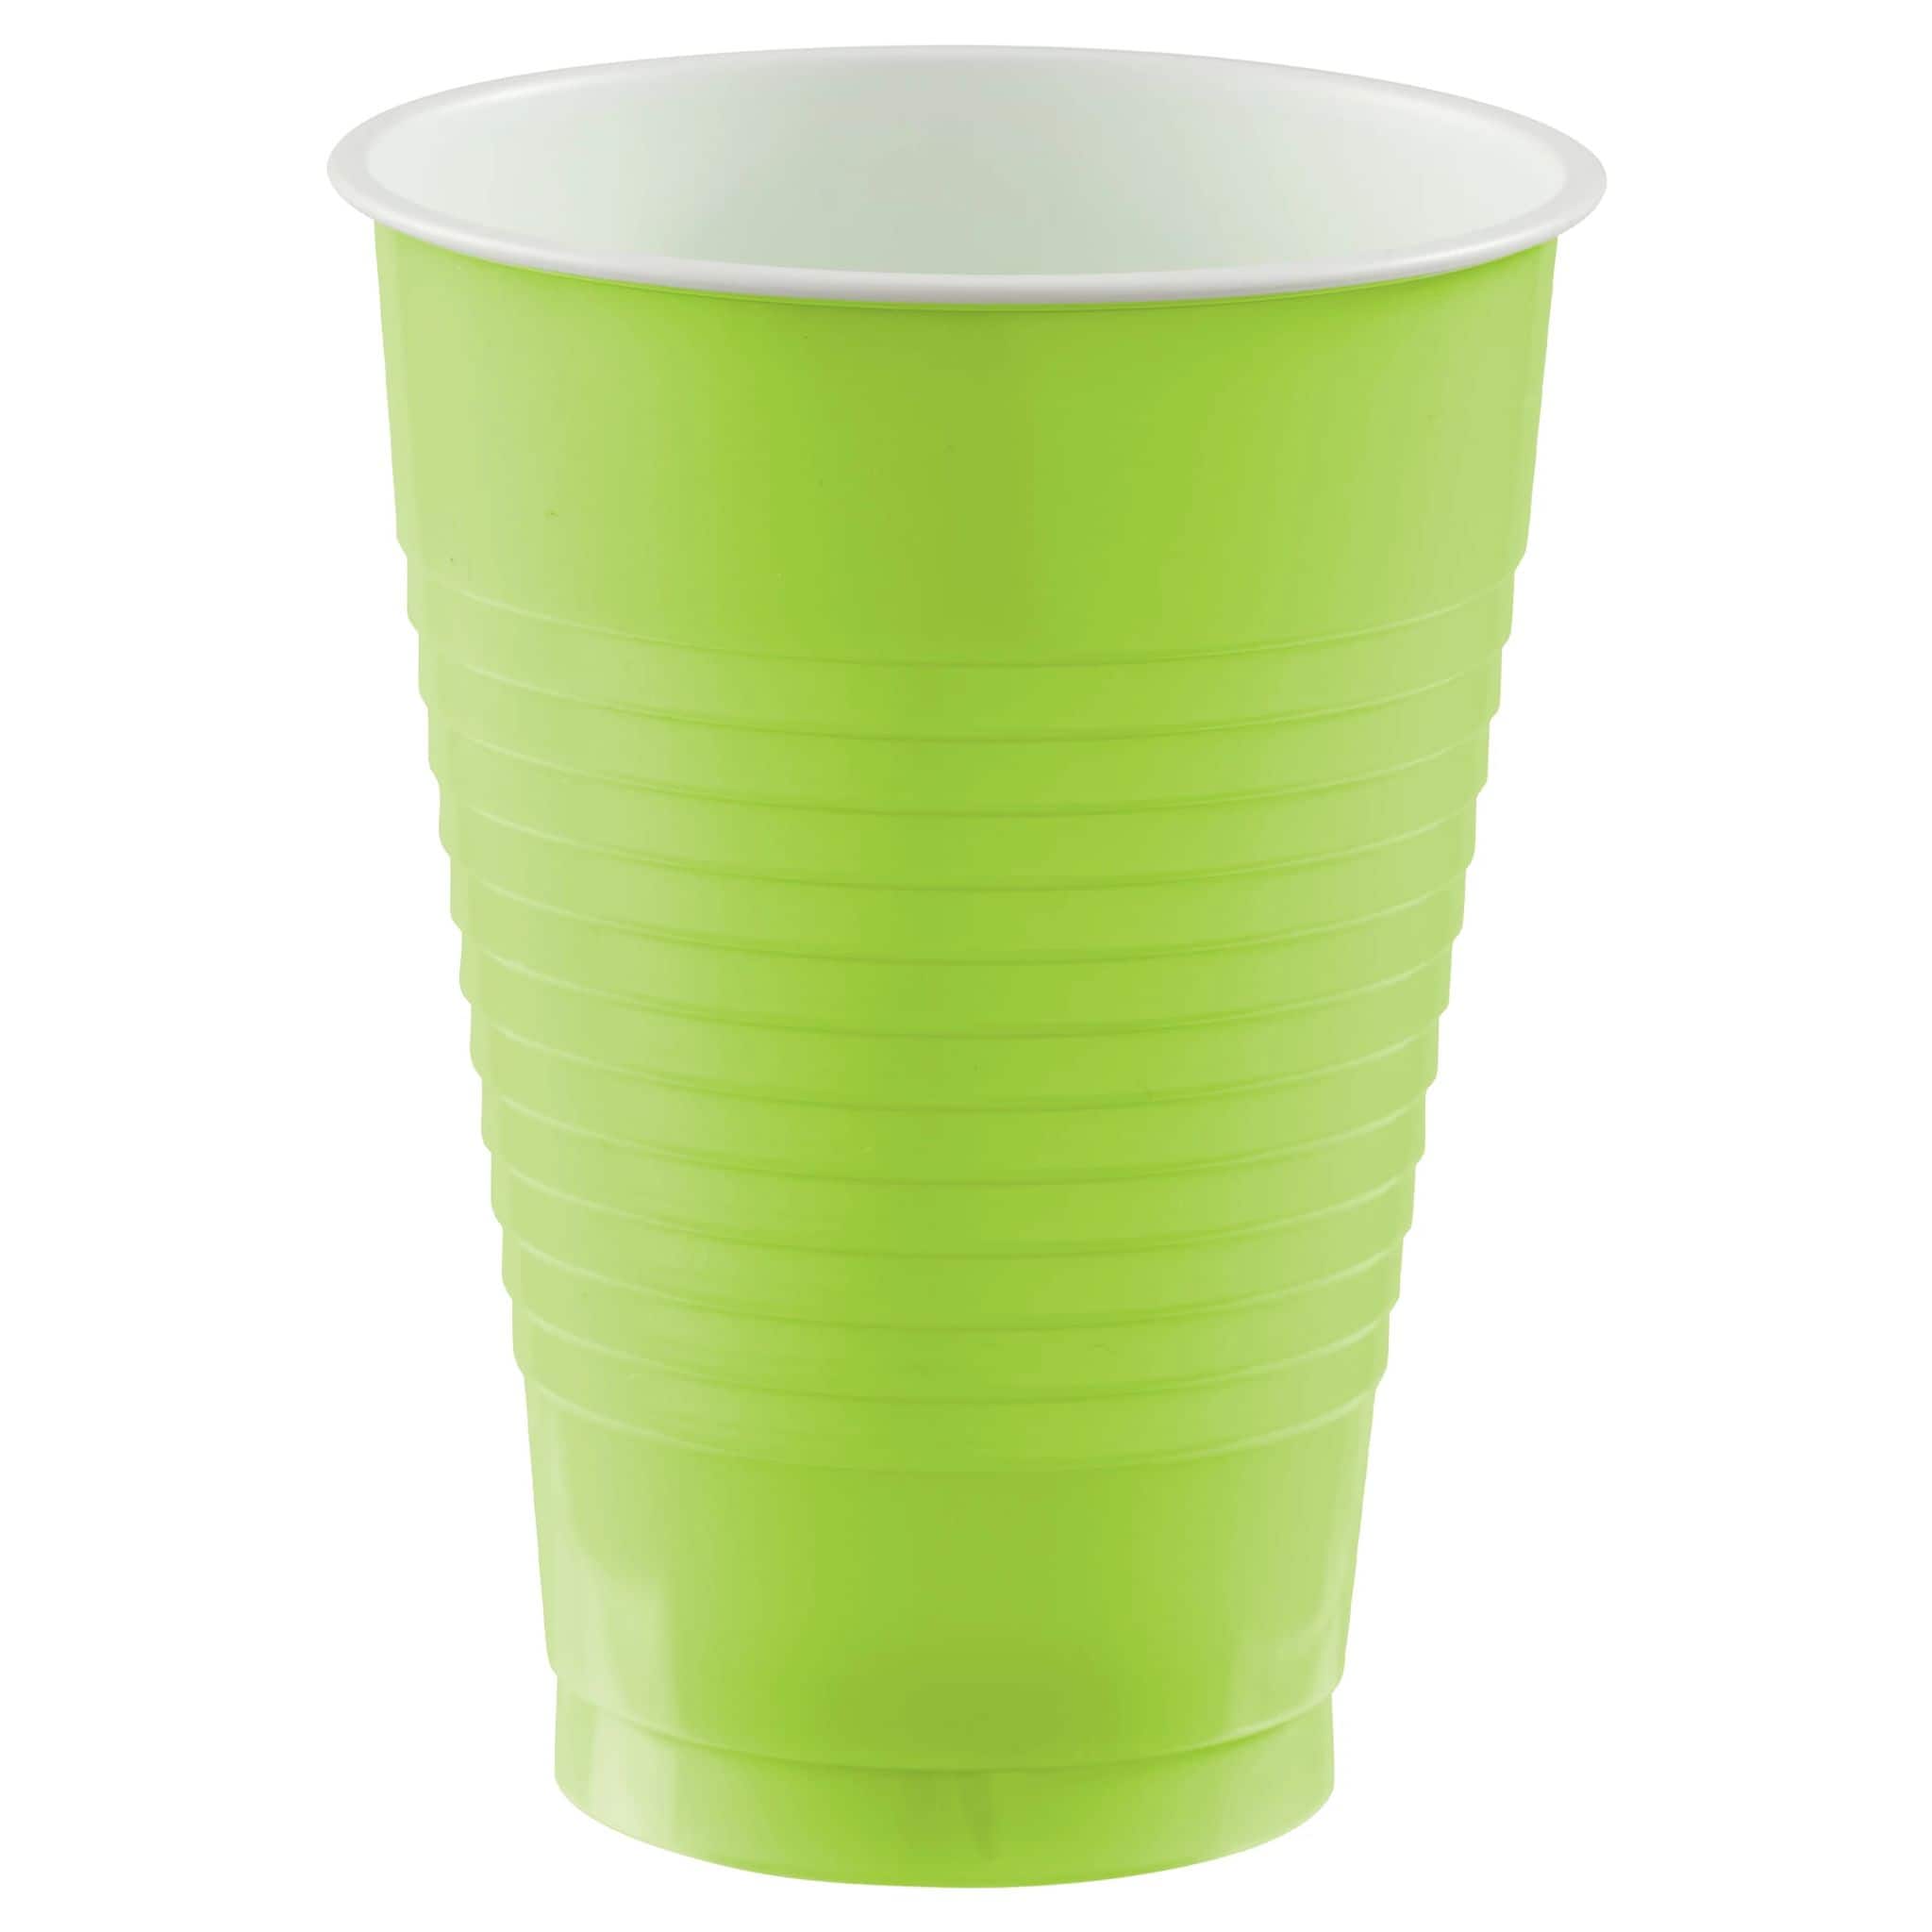 Premium 12 oz Plastic Cups, Olive Green: Party at Lewis Elegant